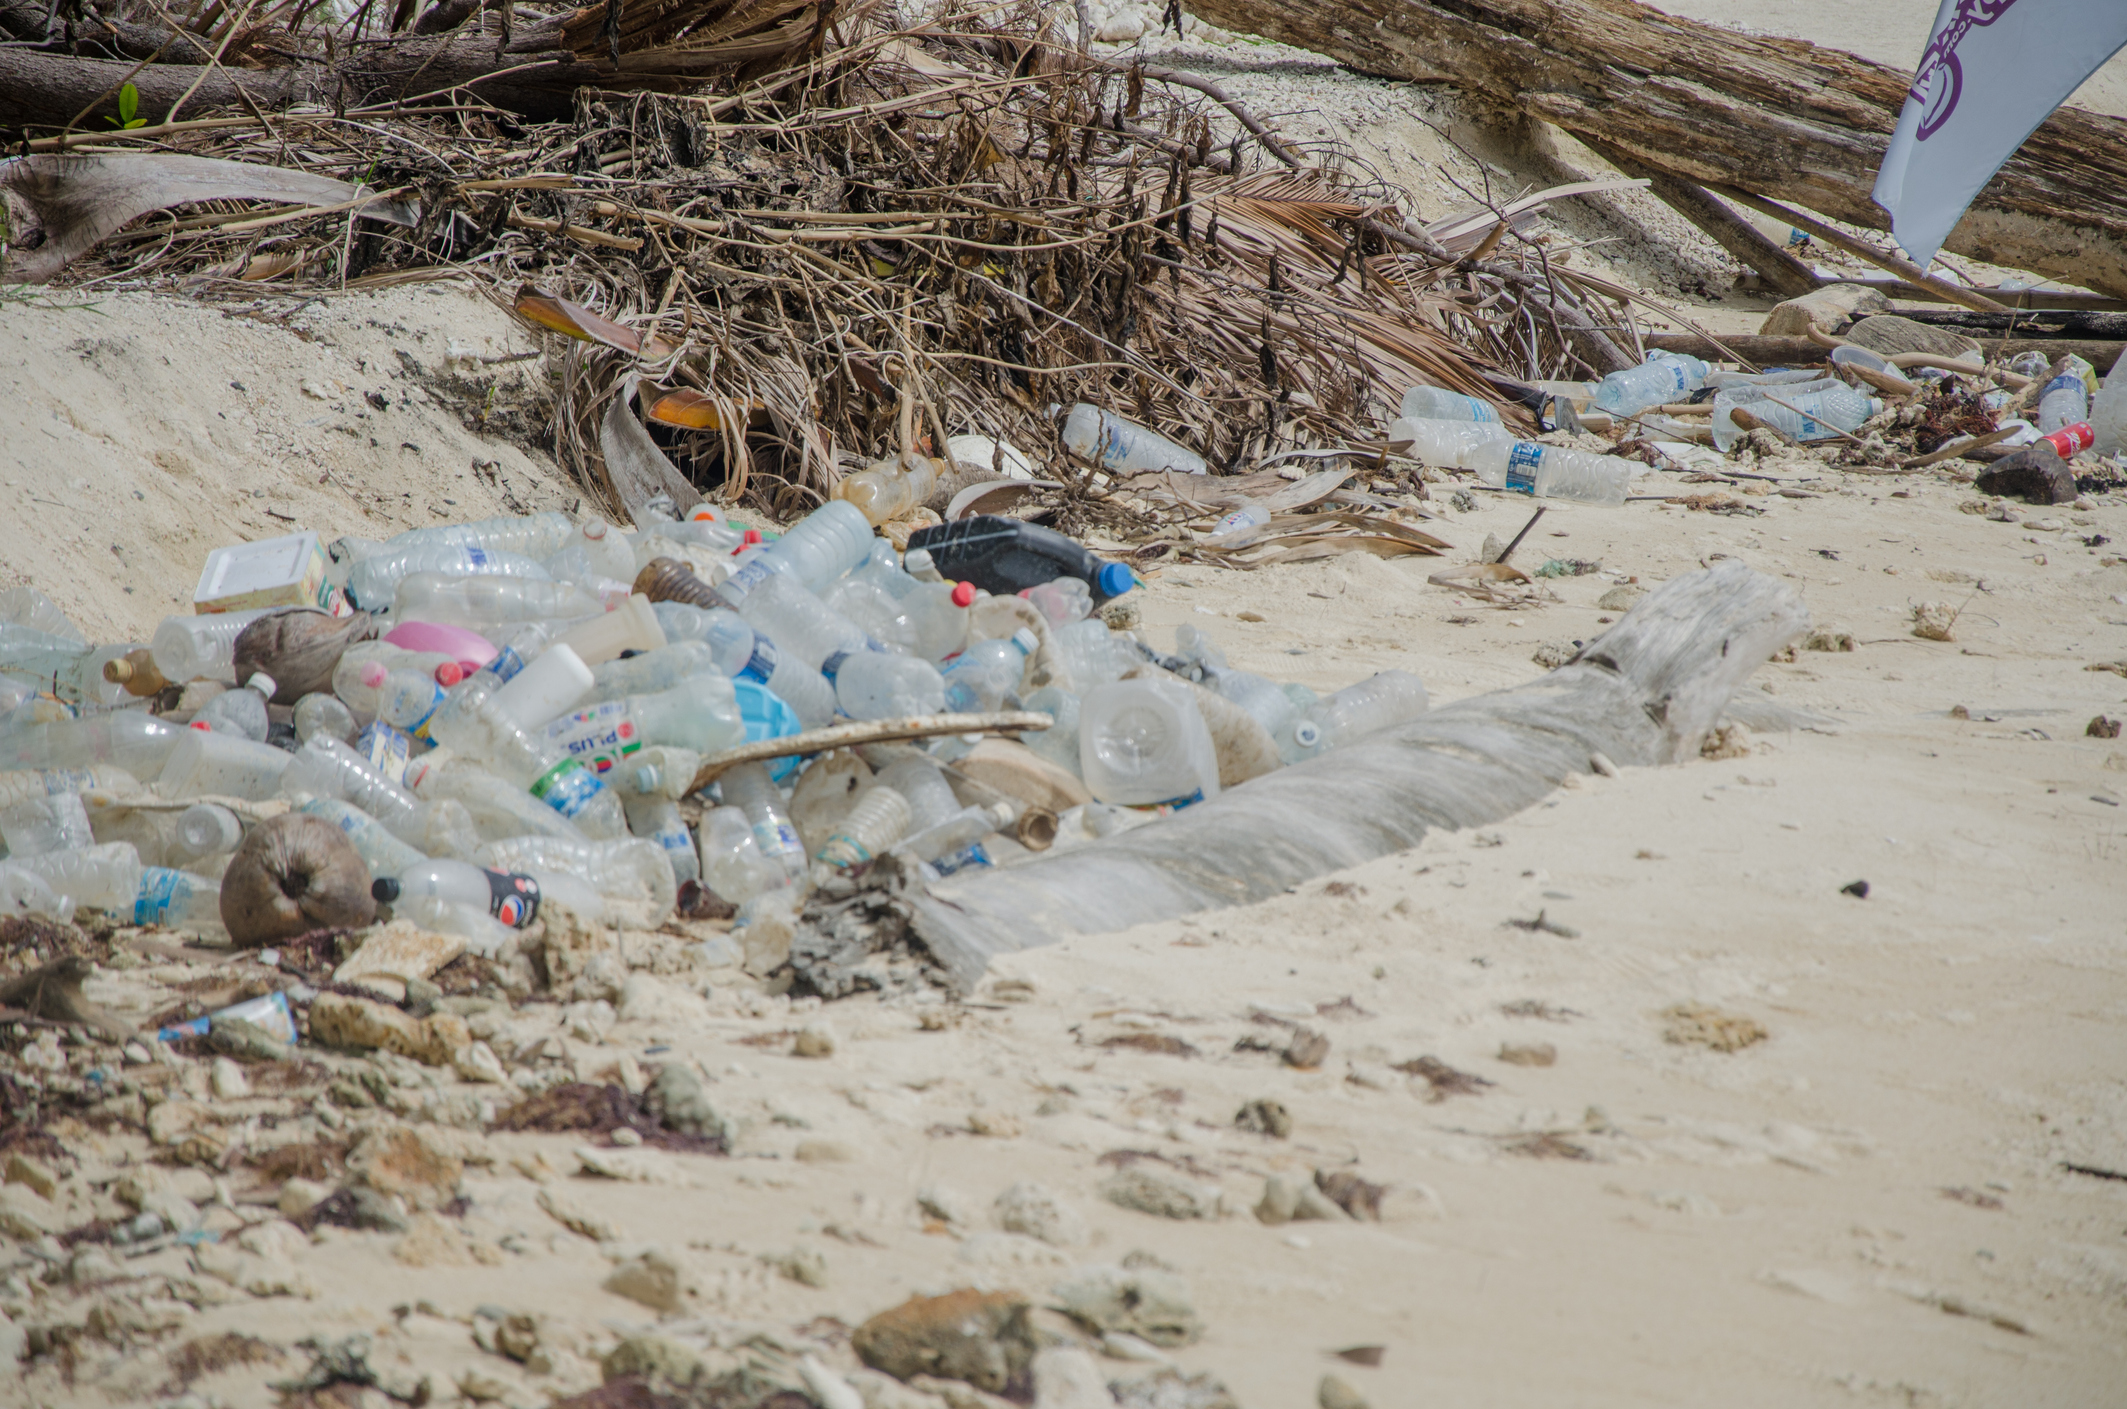 plastic bottles on beach